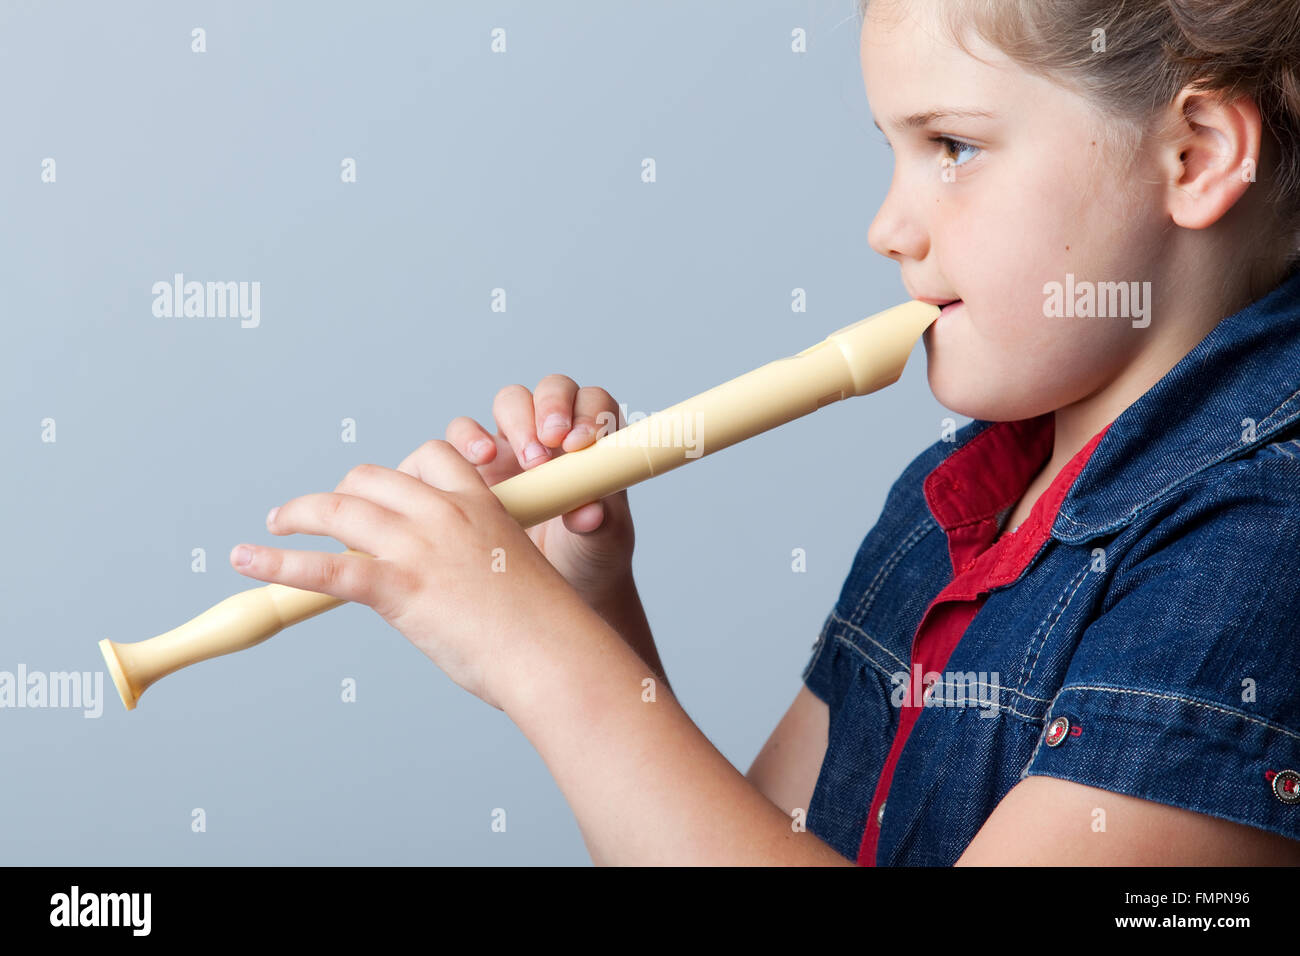 Play the flute. Игра на флейте. Человек с флейтой. Флейта в руках. Девочка играет на флейте.